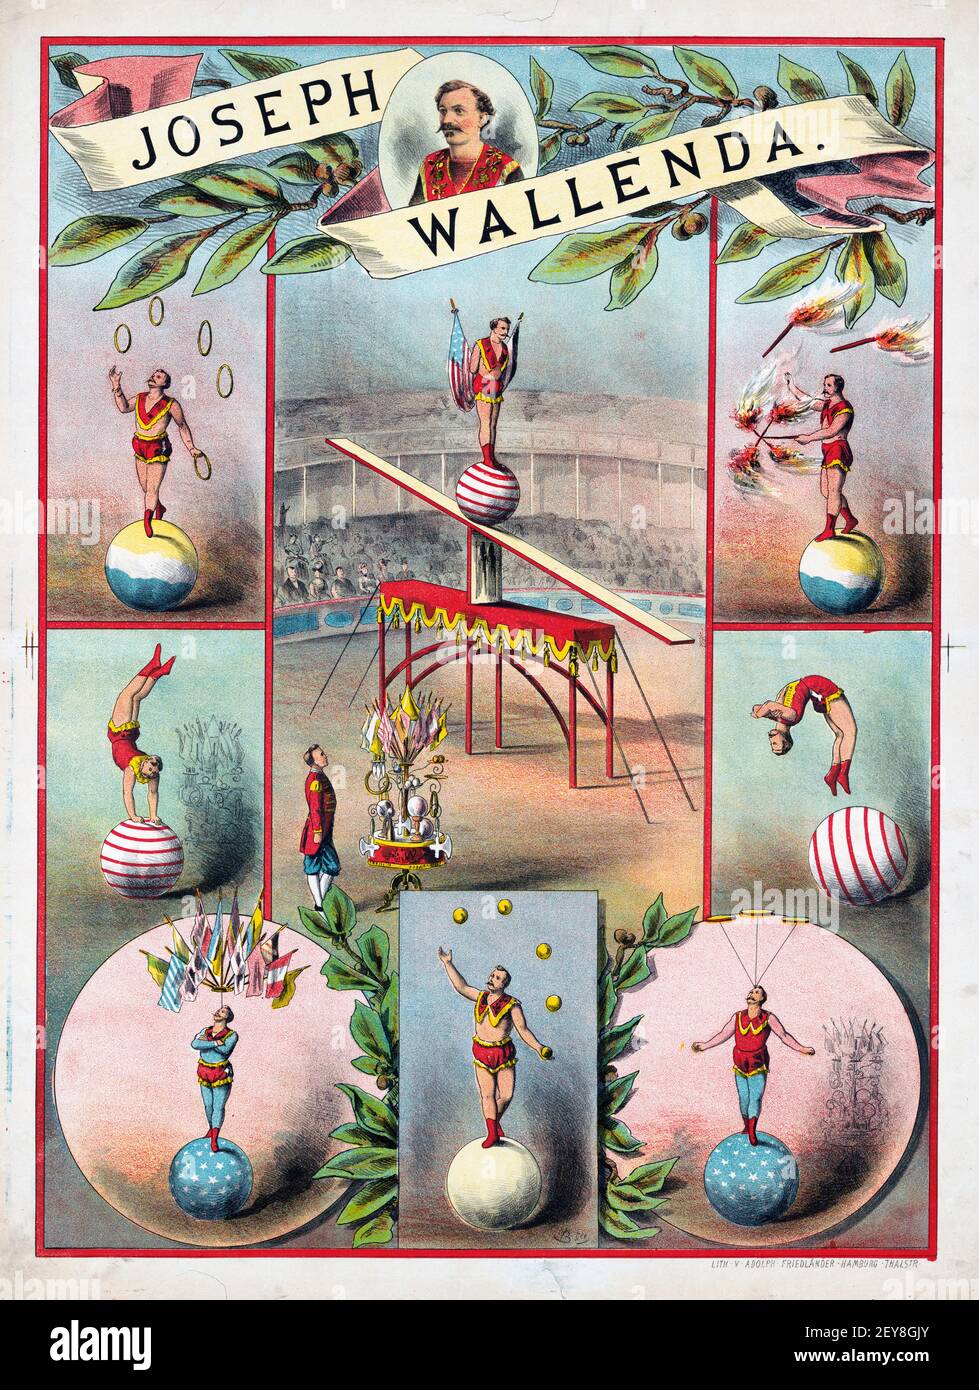 Klassisches Zirkus-Poster, im alten und Vintage-Stil mit Akrobatik-Szenen. - Joseph Wallenda. Zirkusvorstellung. Stockfoto